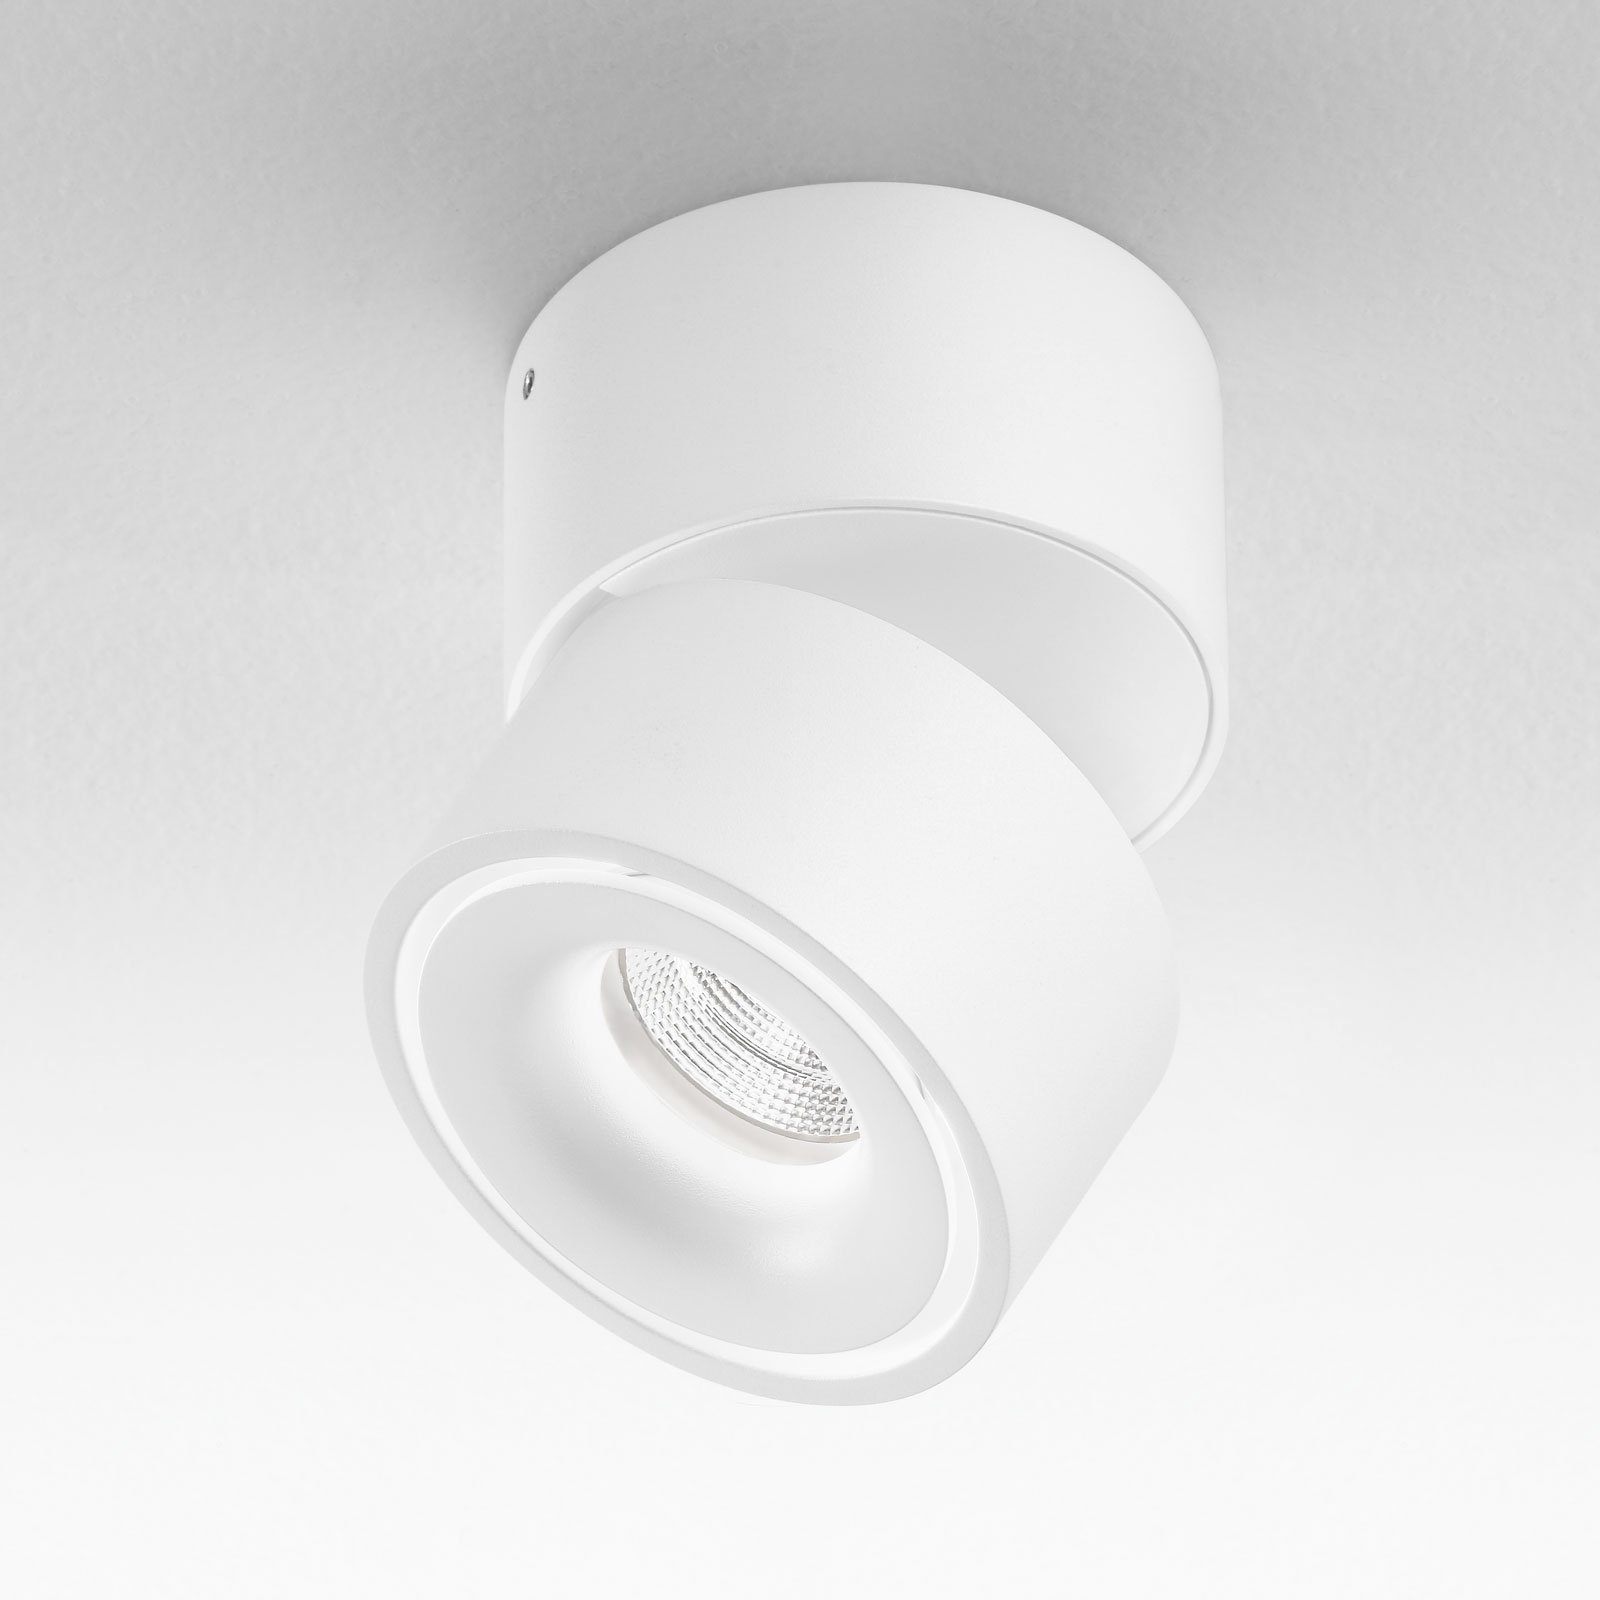 Egger Clippo LED downlight, white, 3,000 K